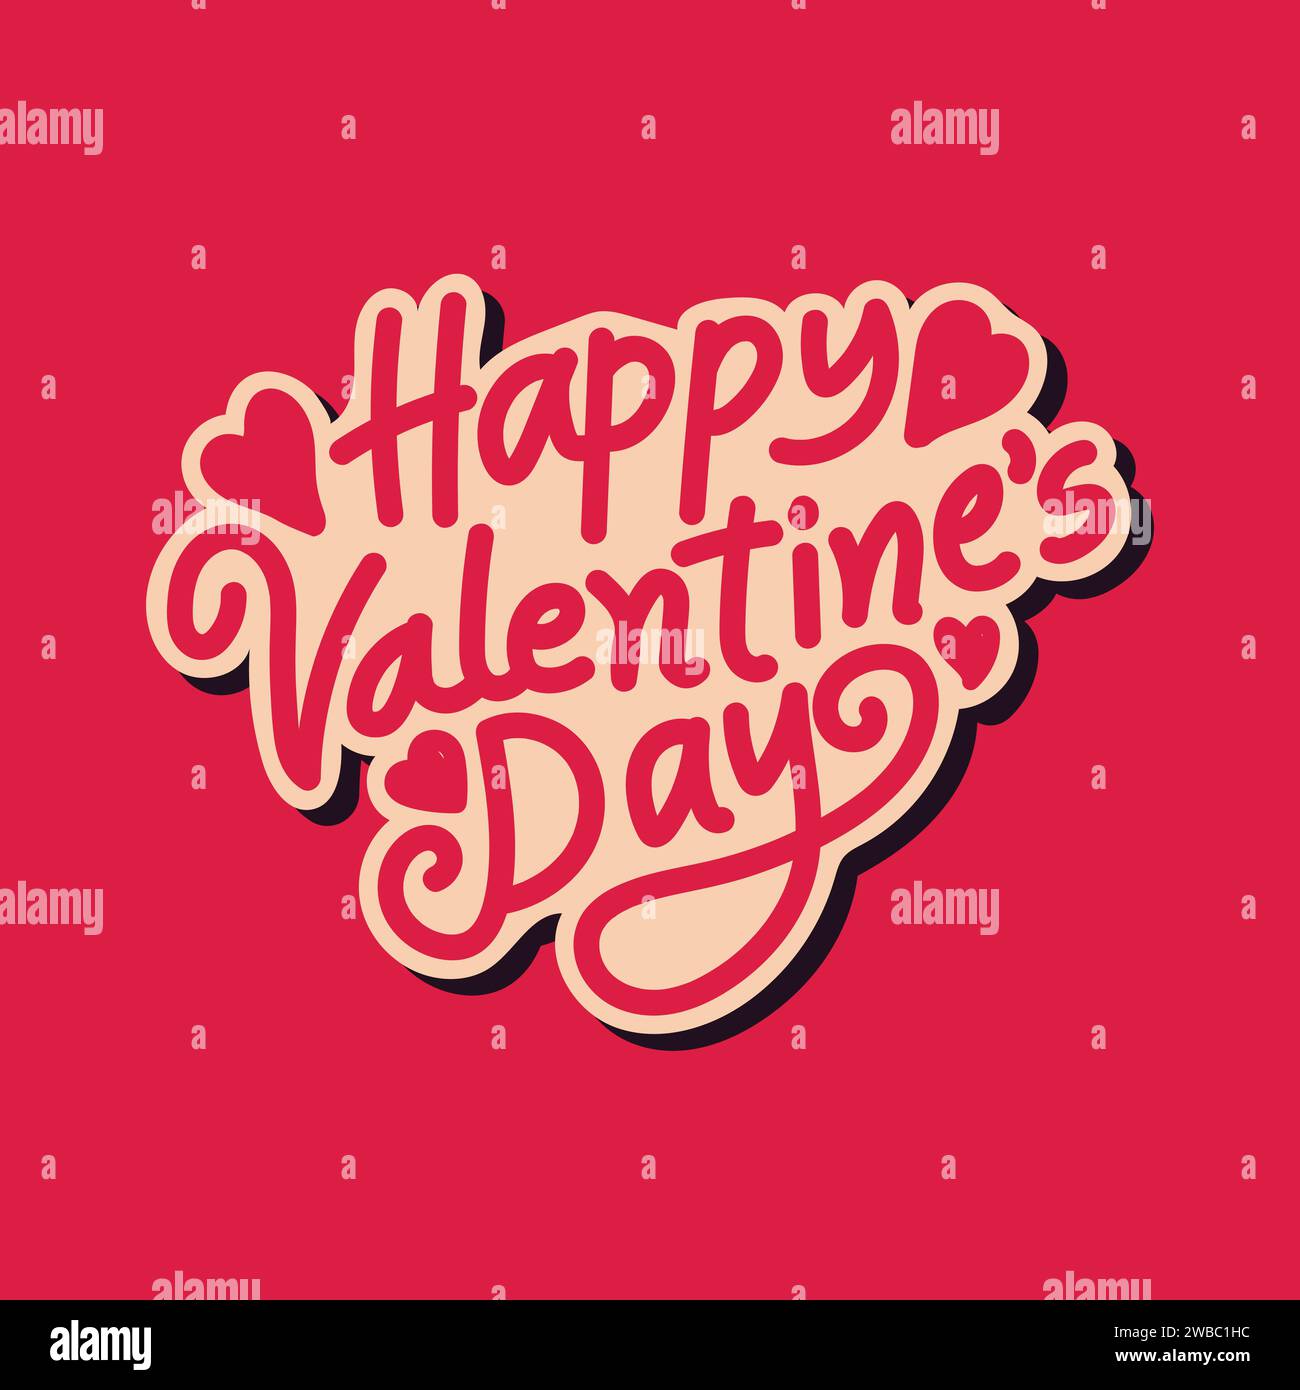 Happy Valentines Day Hand beschriftende Vektor-Illustration auf rotem Hintergrund. Liebe und romantisches Konzept für valentinstag am 14. Februar. Stock Vektor